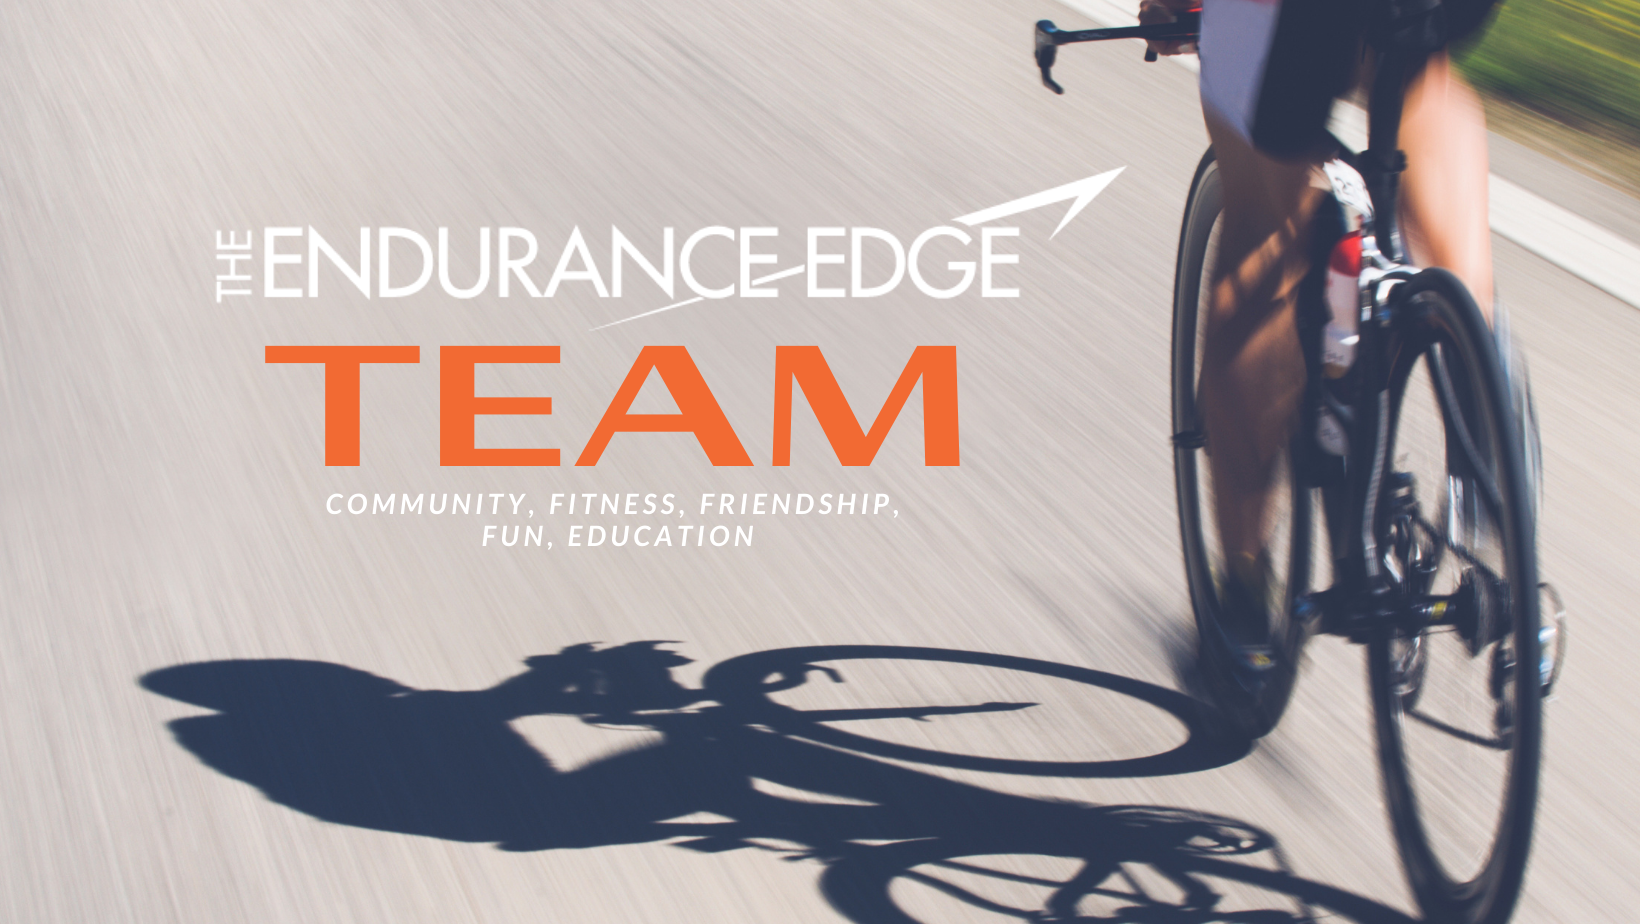 The Endurance Edge Team